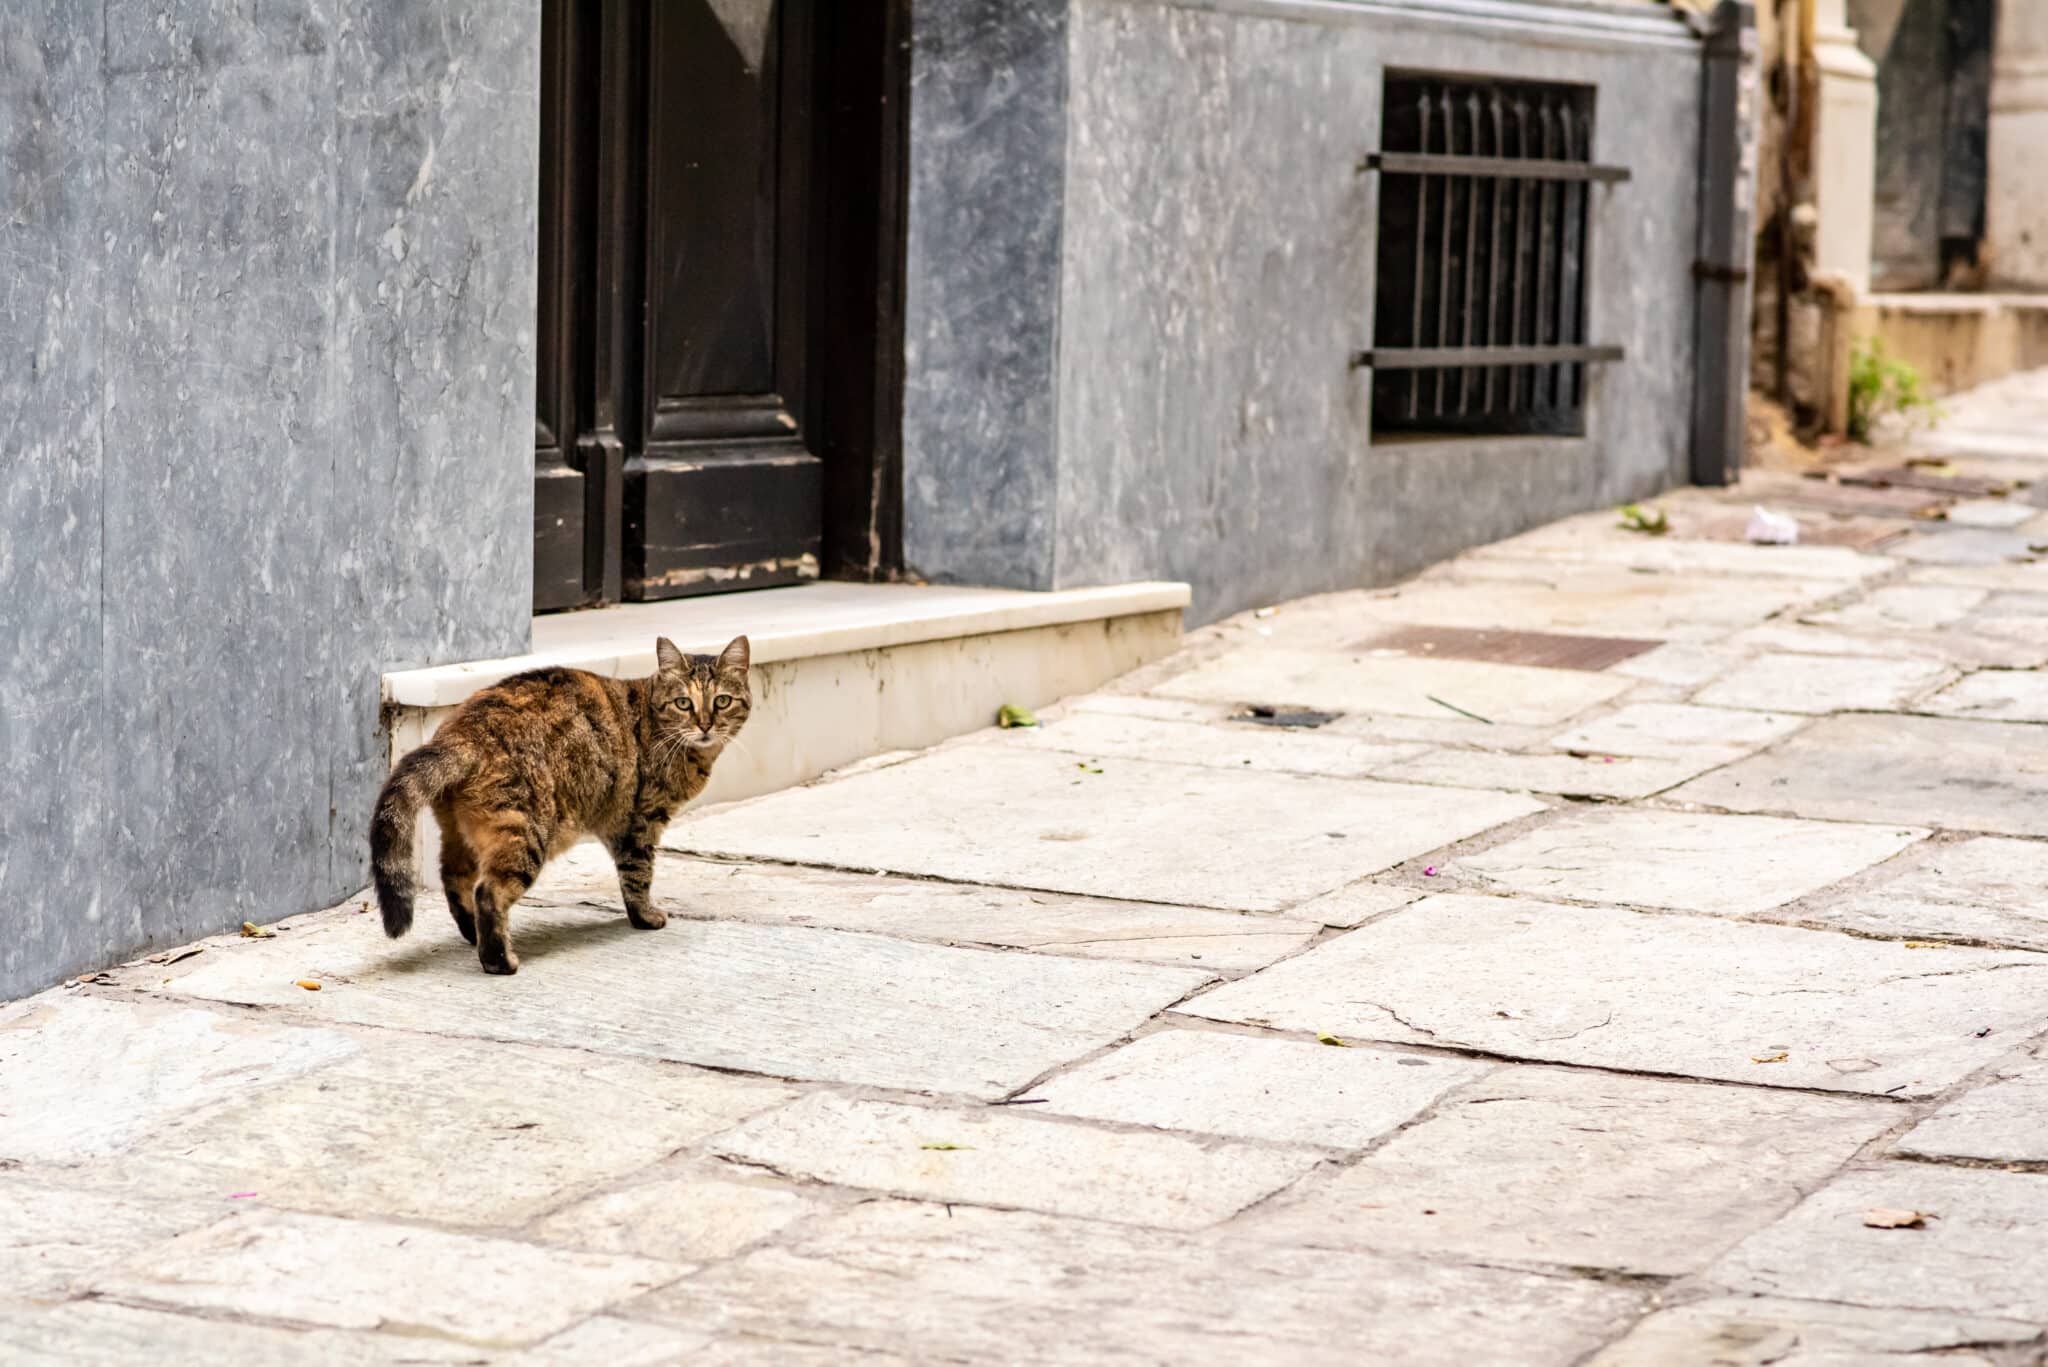 Macska a kamerába néz az utcán egy ajtó előtt